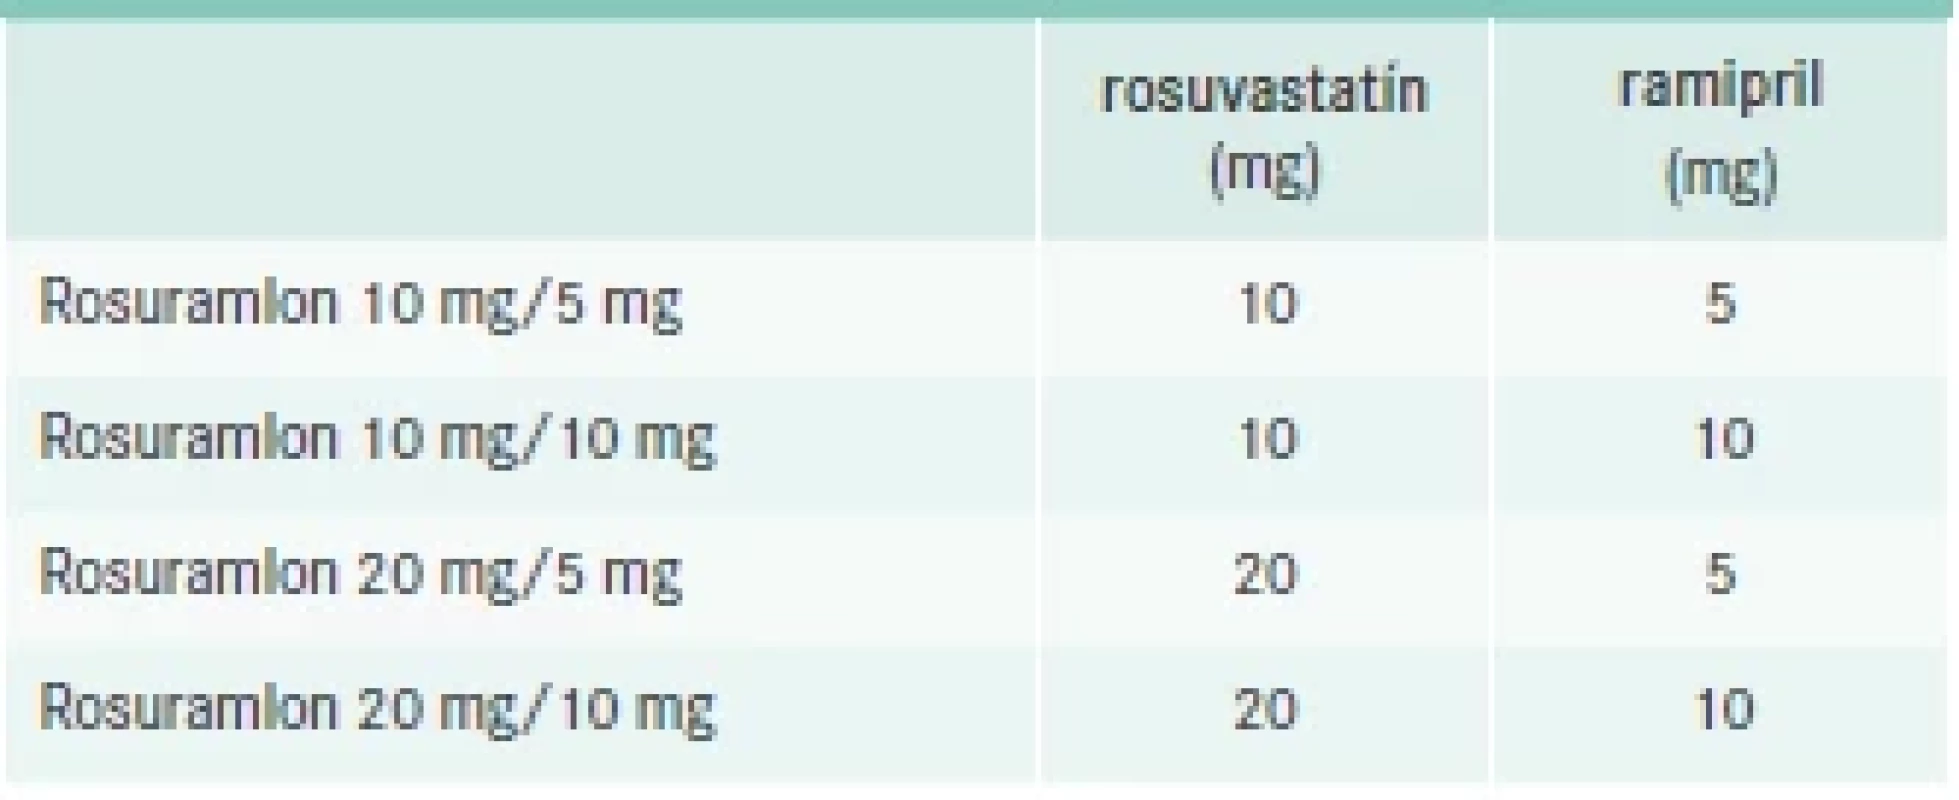 Kvalitatívne a kvantitatívne zloženie lieku
Rosuramlon. Upravené podľa [61]